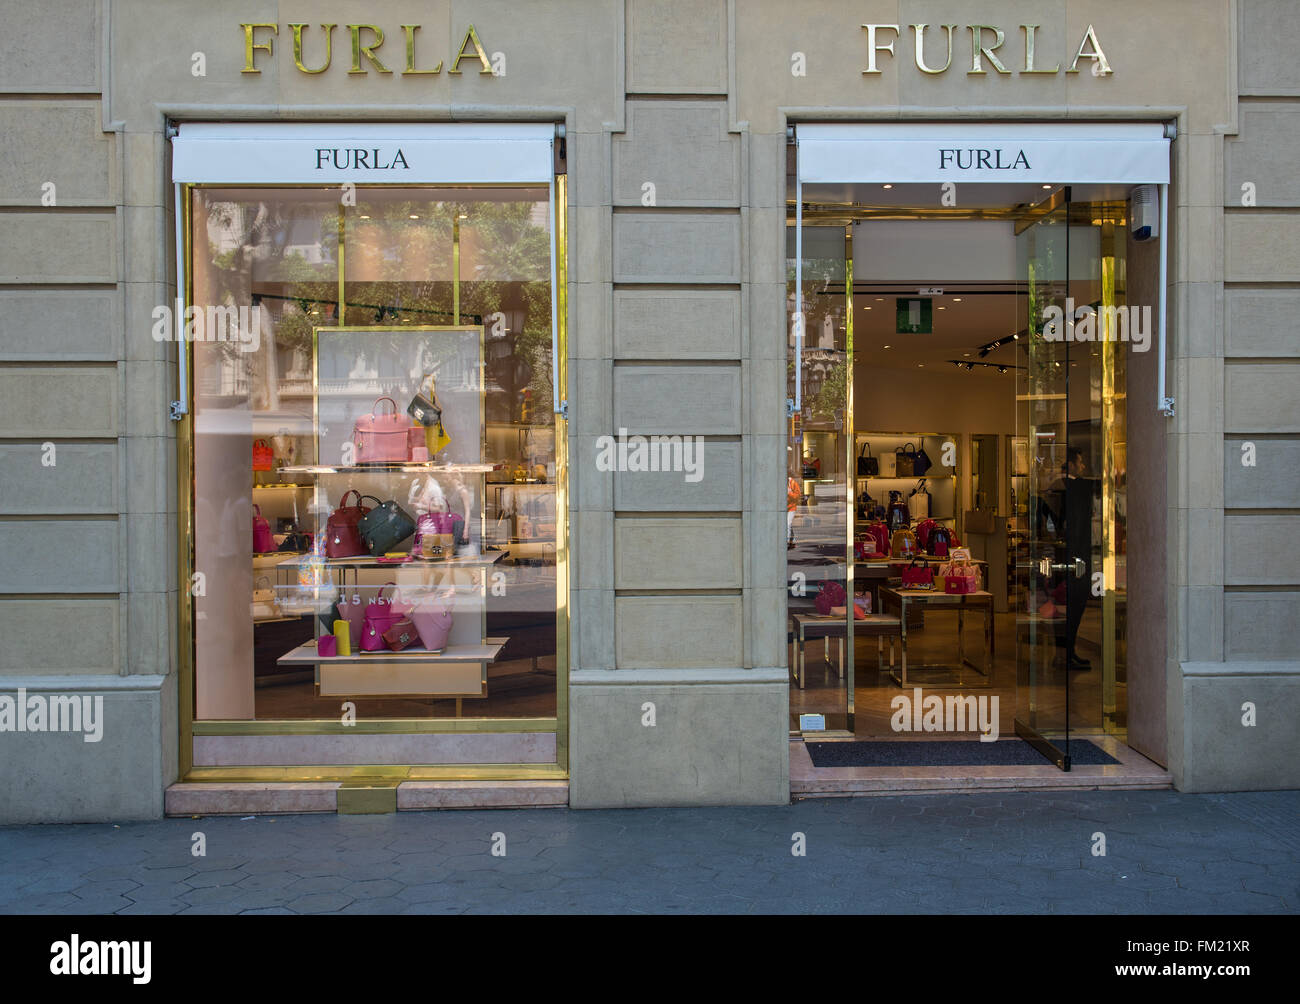 Furla store at Passeig de Gracia avenue in Barcelona, Spain Stock Photo -  Alamy